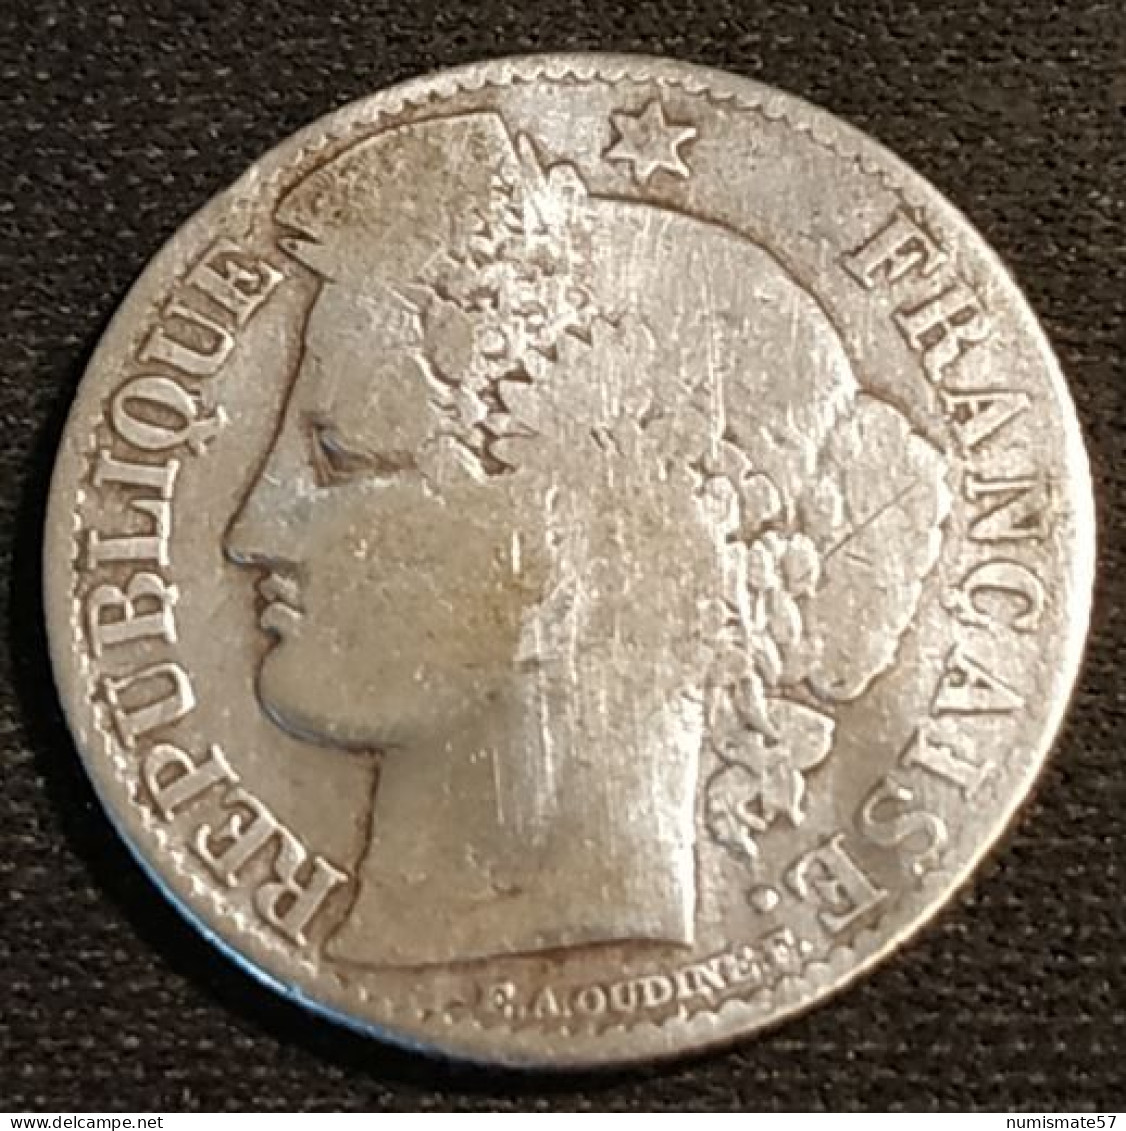 FRANCE - 50 CENTIMES 1888 A - Cérès IIIe République - Argent - Silver - Gad 419 - KM 834 - 50 Centimes